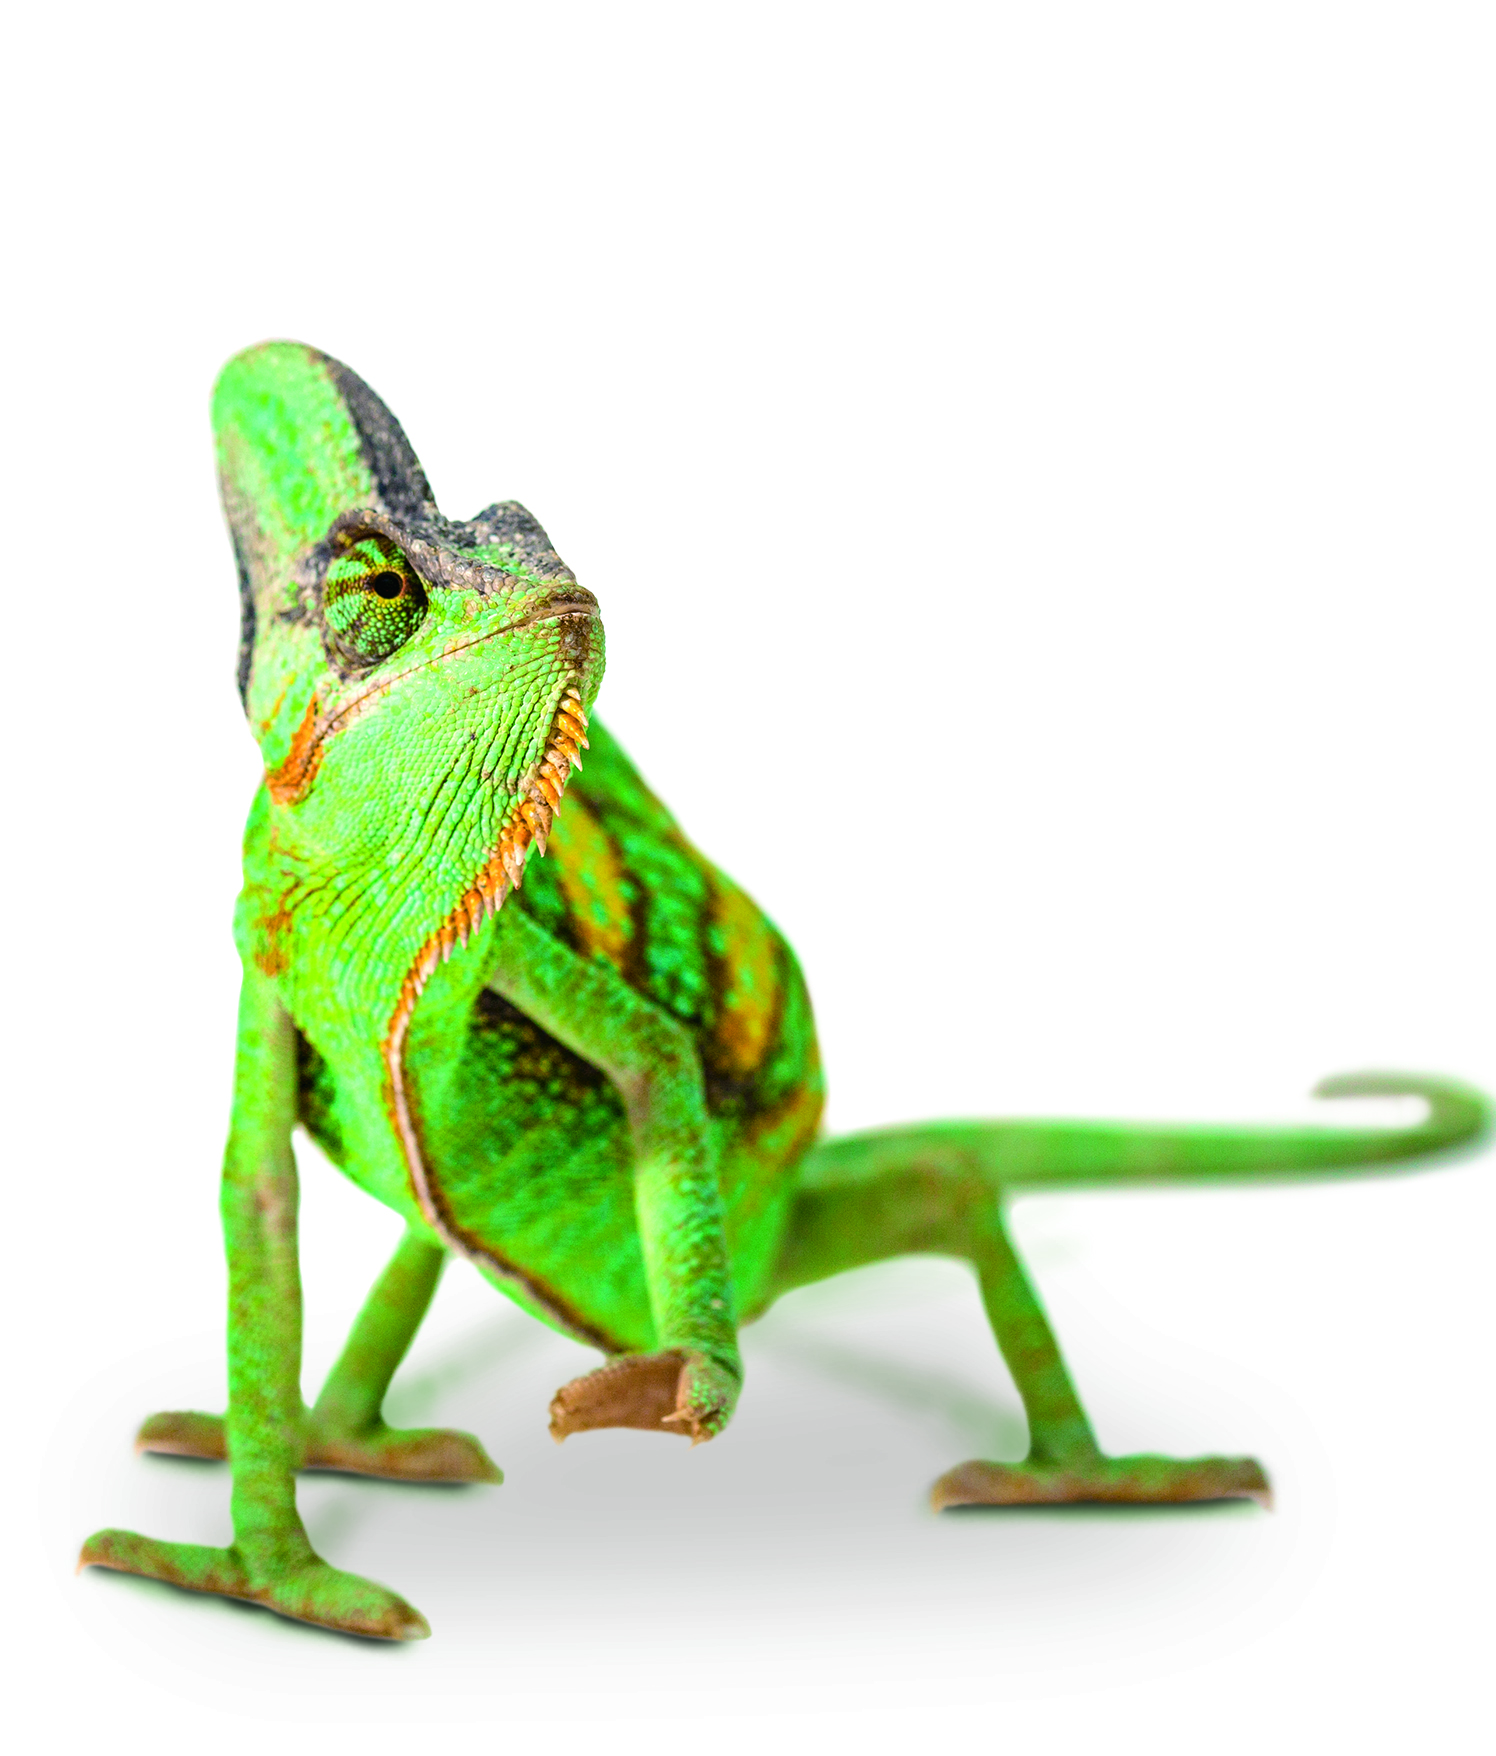 Chameleon.jpg